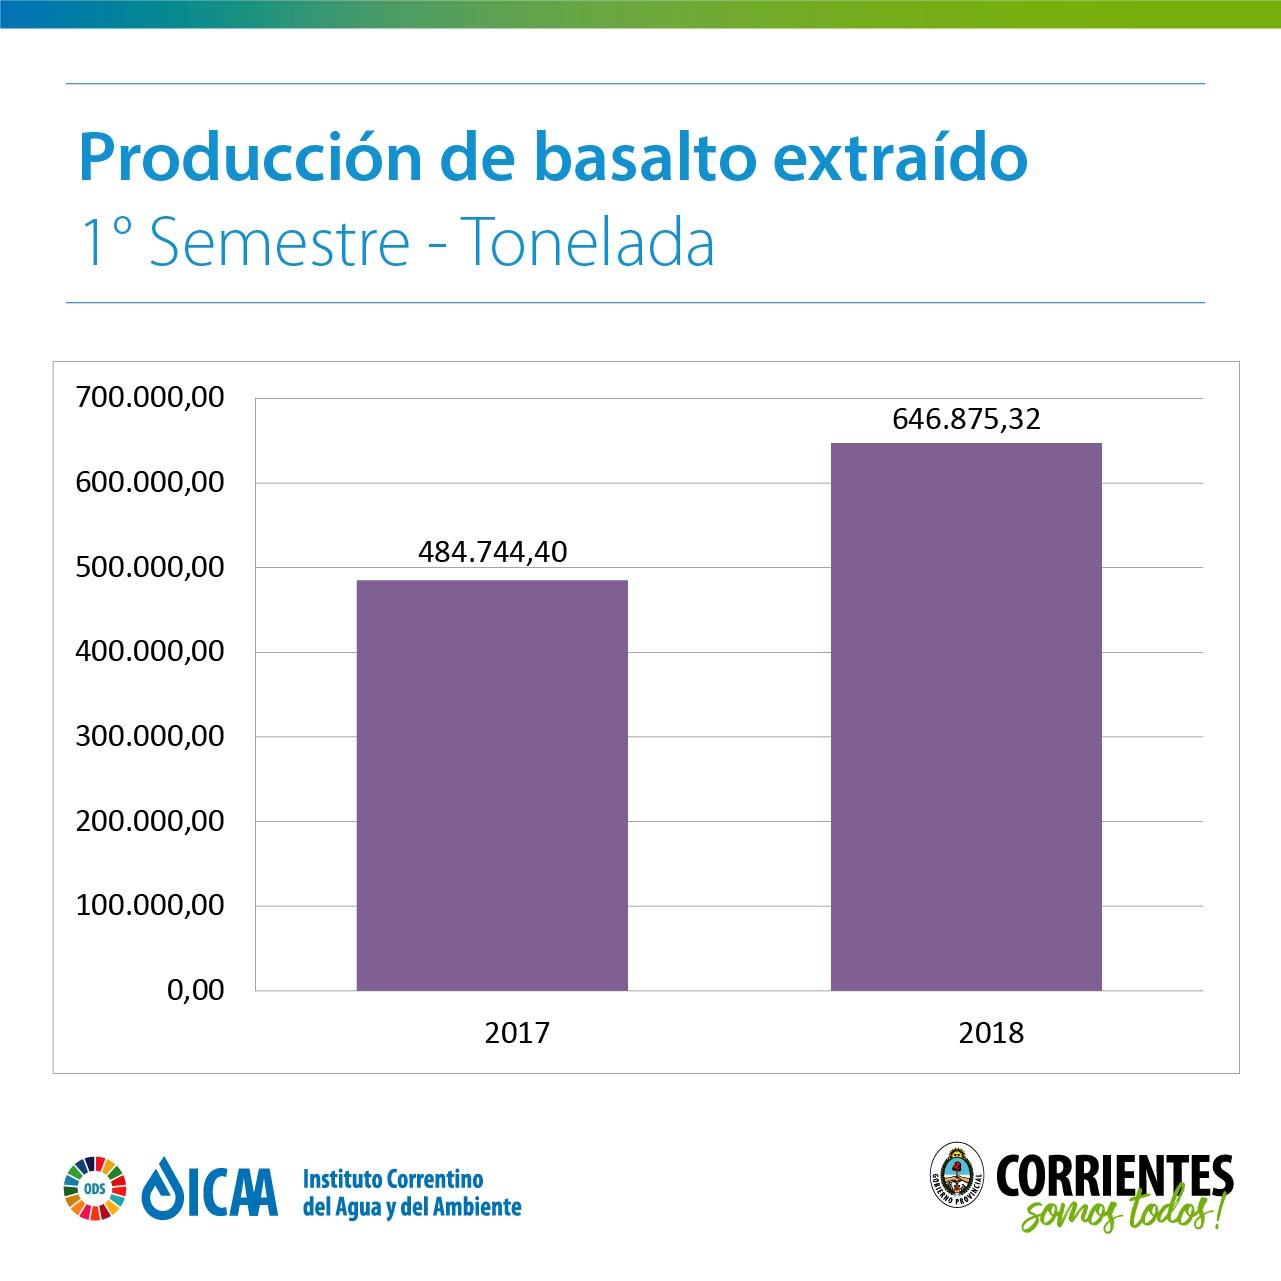 producción de basalto extraído: en el 2017: 484.744,40 y en el 2018: 646.875,32